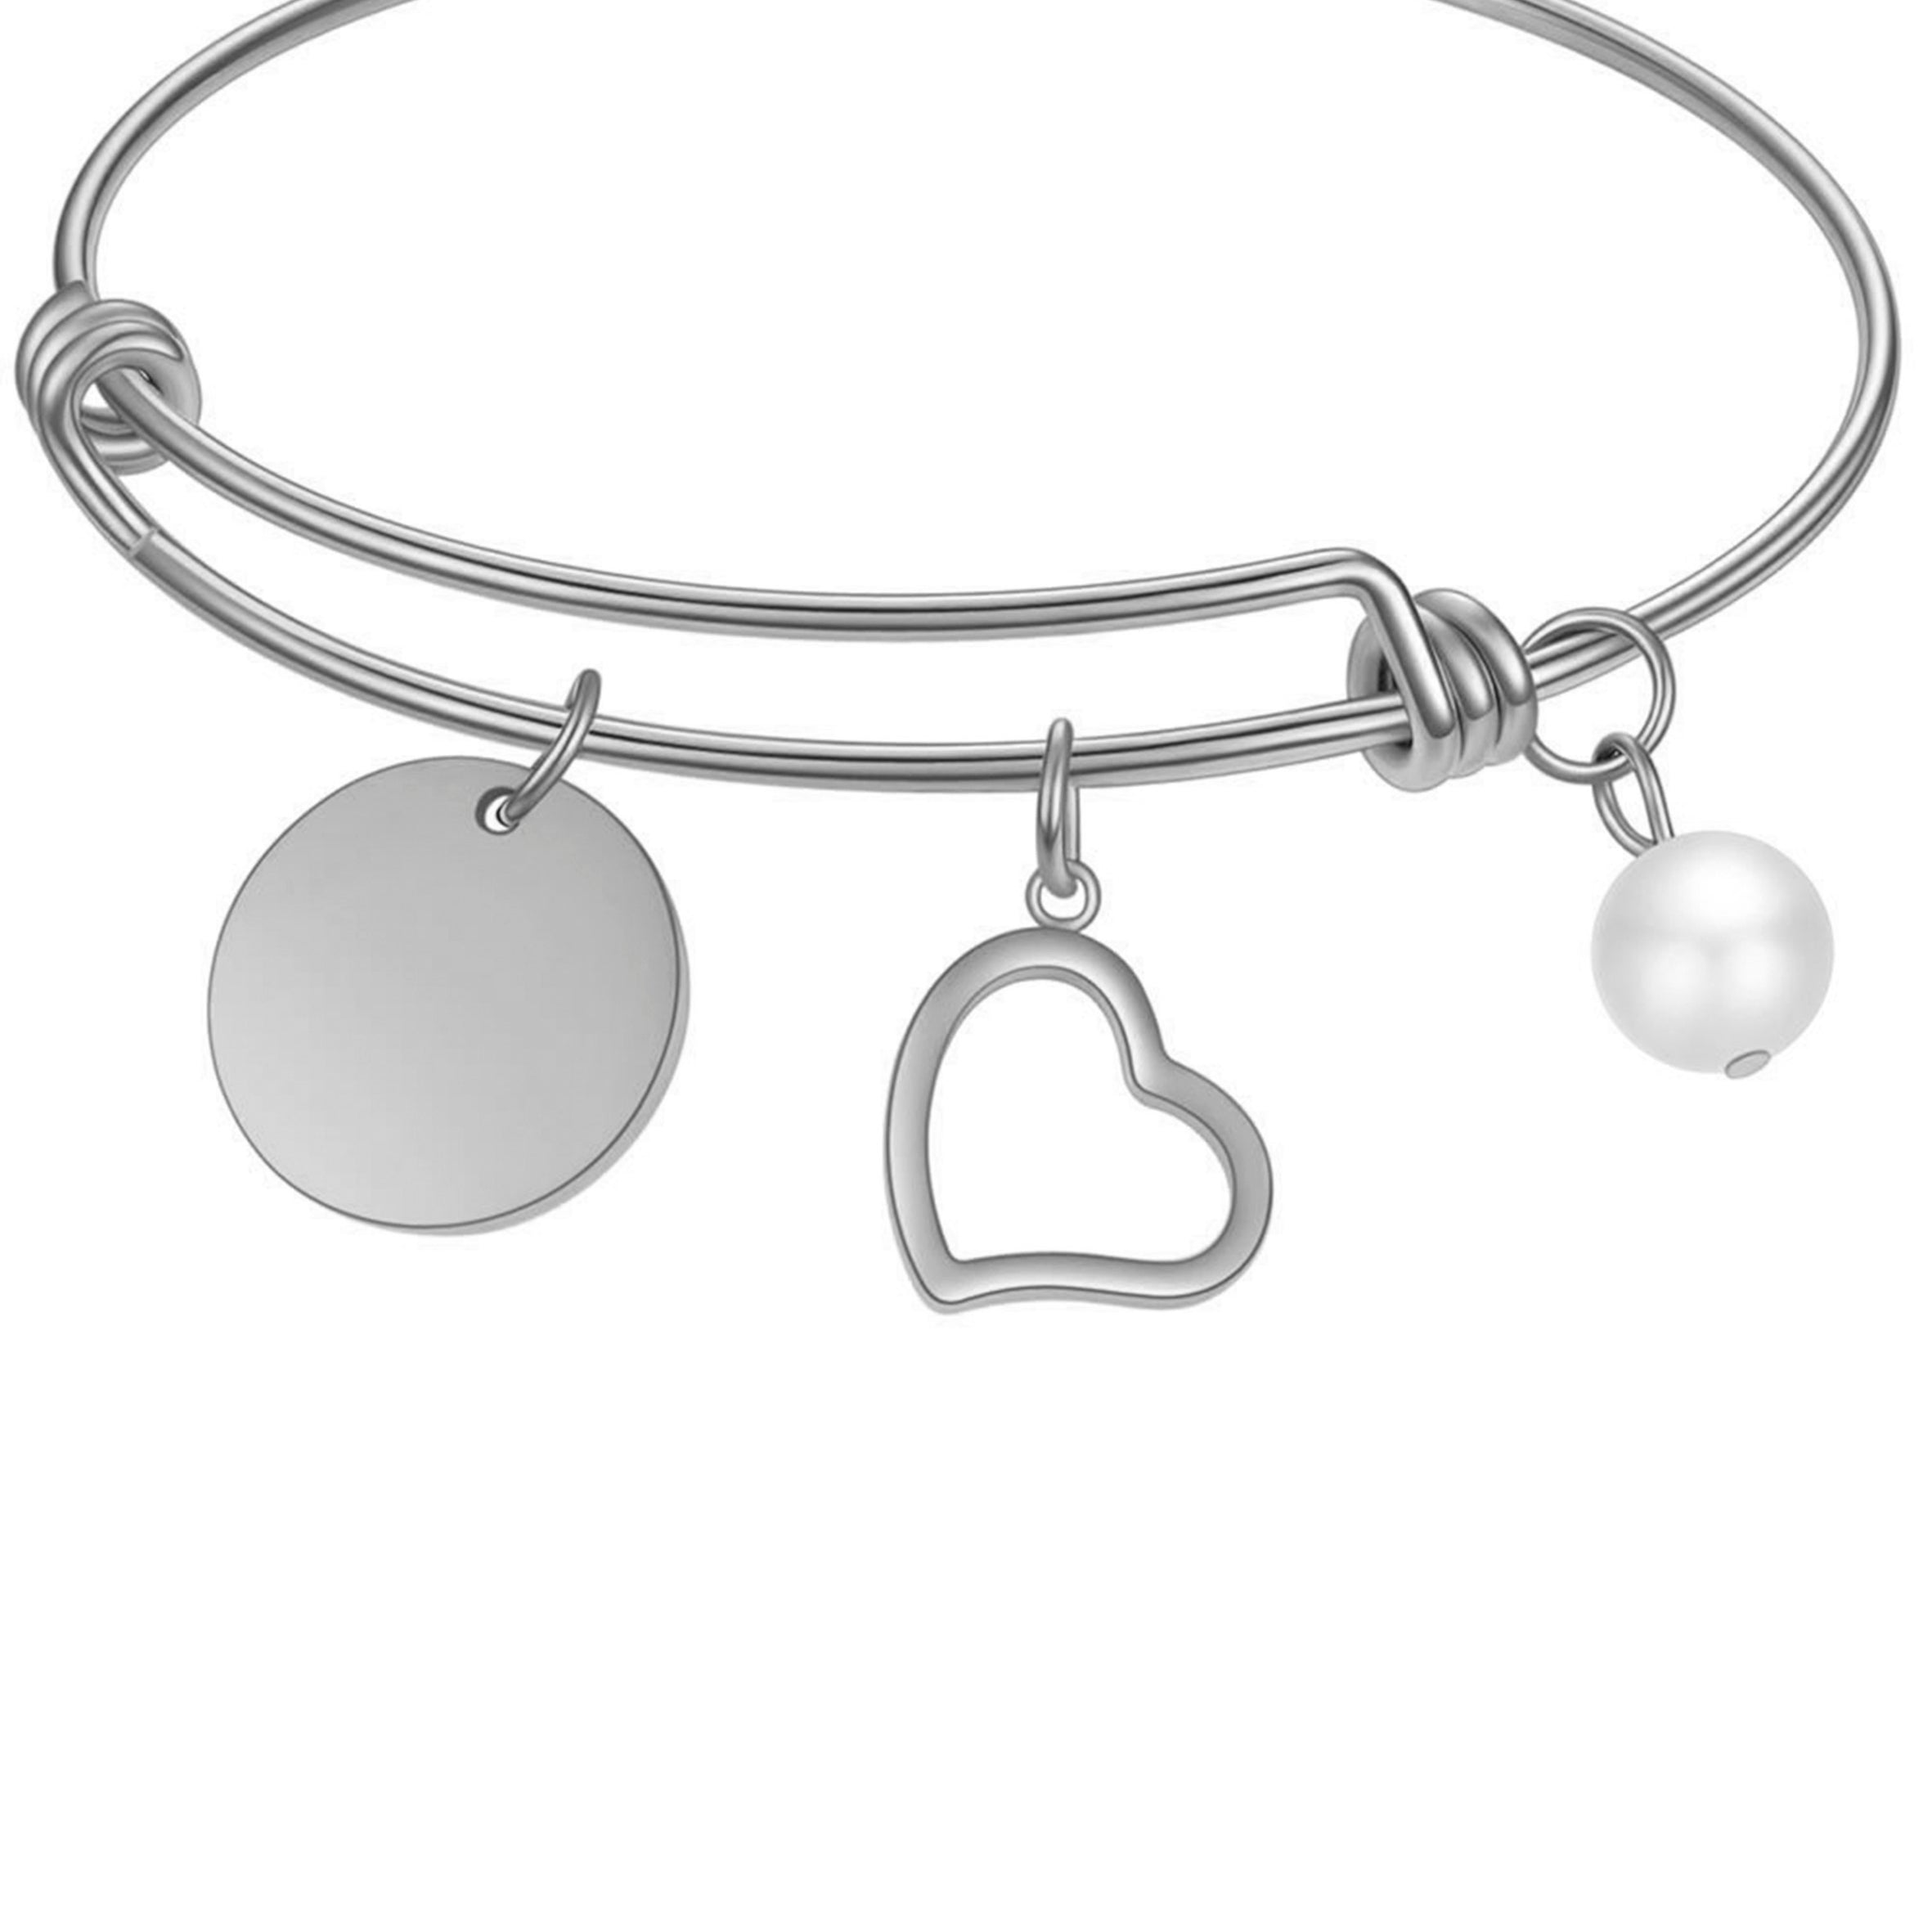 Stainless Steel Heart Pendant Bracelets B2325